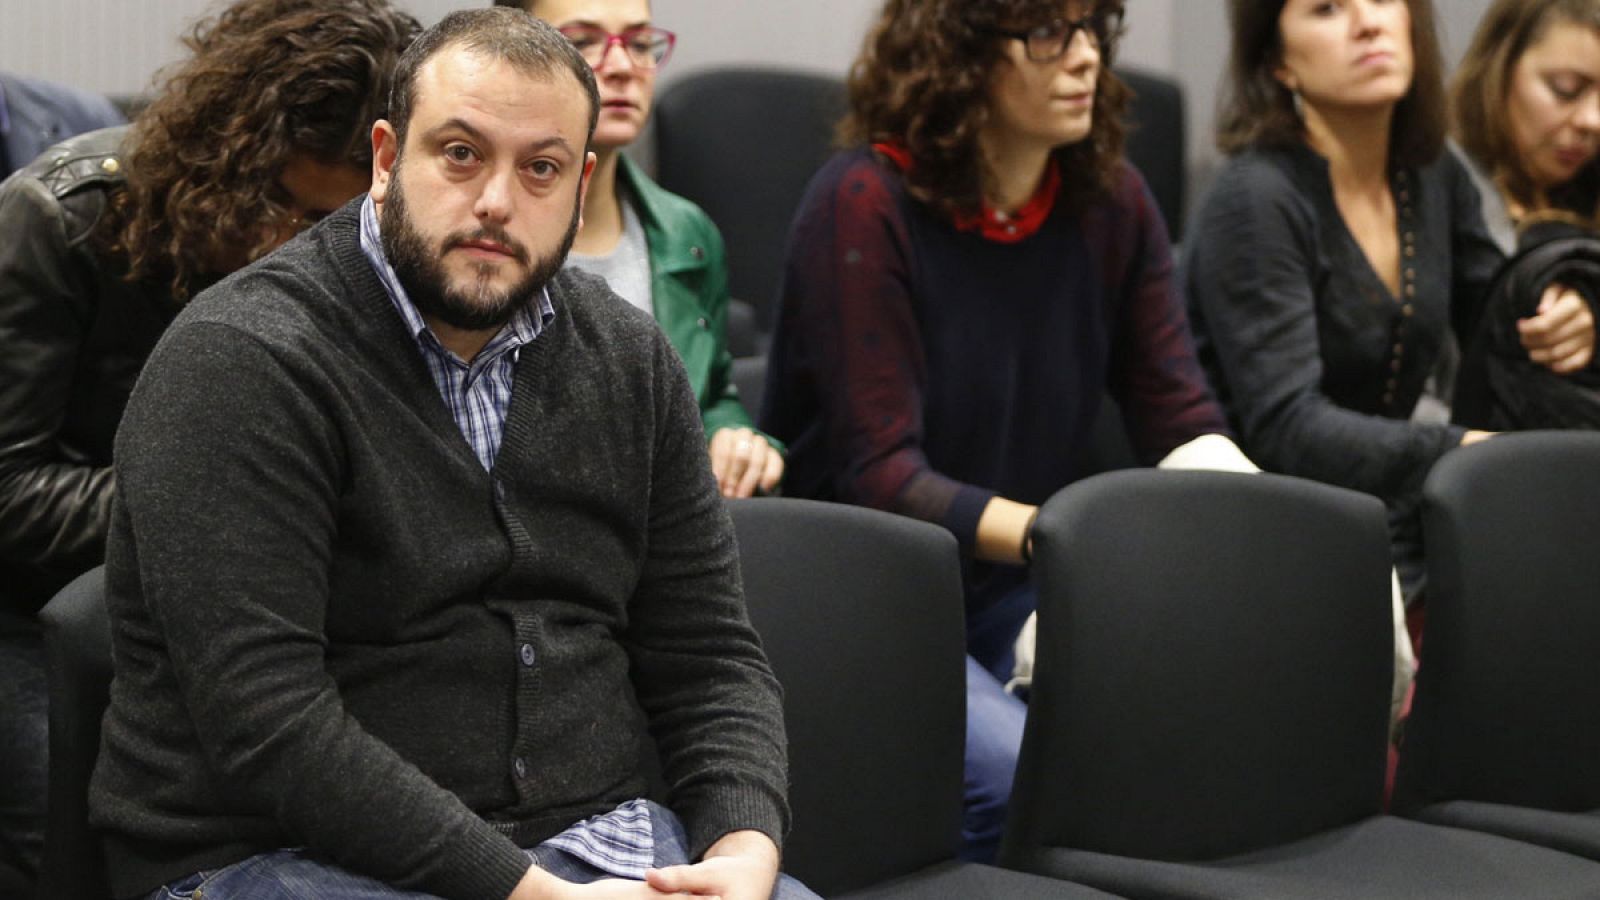 El concejal de Ahora Madrid Guillermo Zapata durante el juicio contra él en la Audiencia Nacional